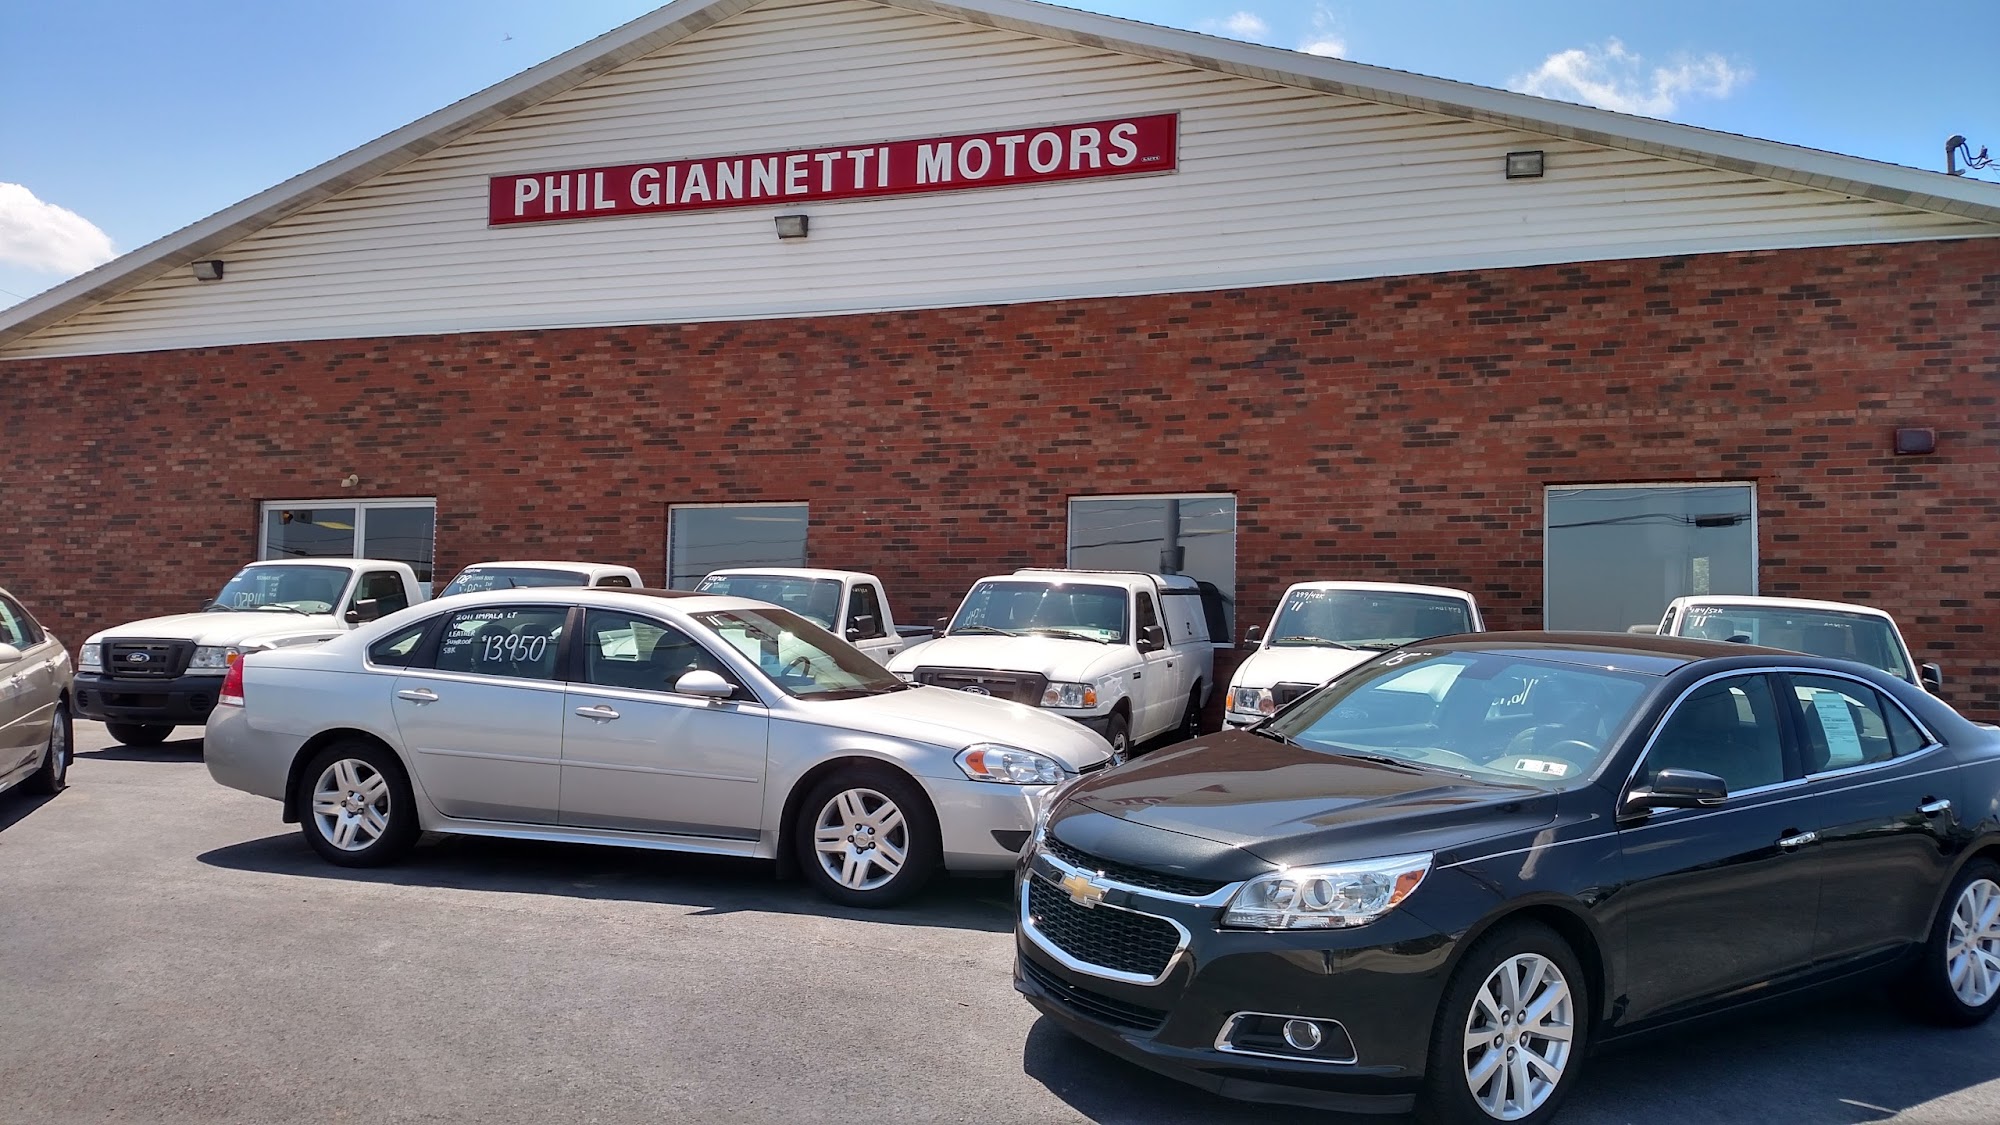 Phil Giannetti Motors